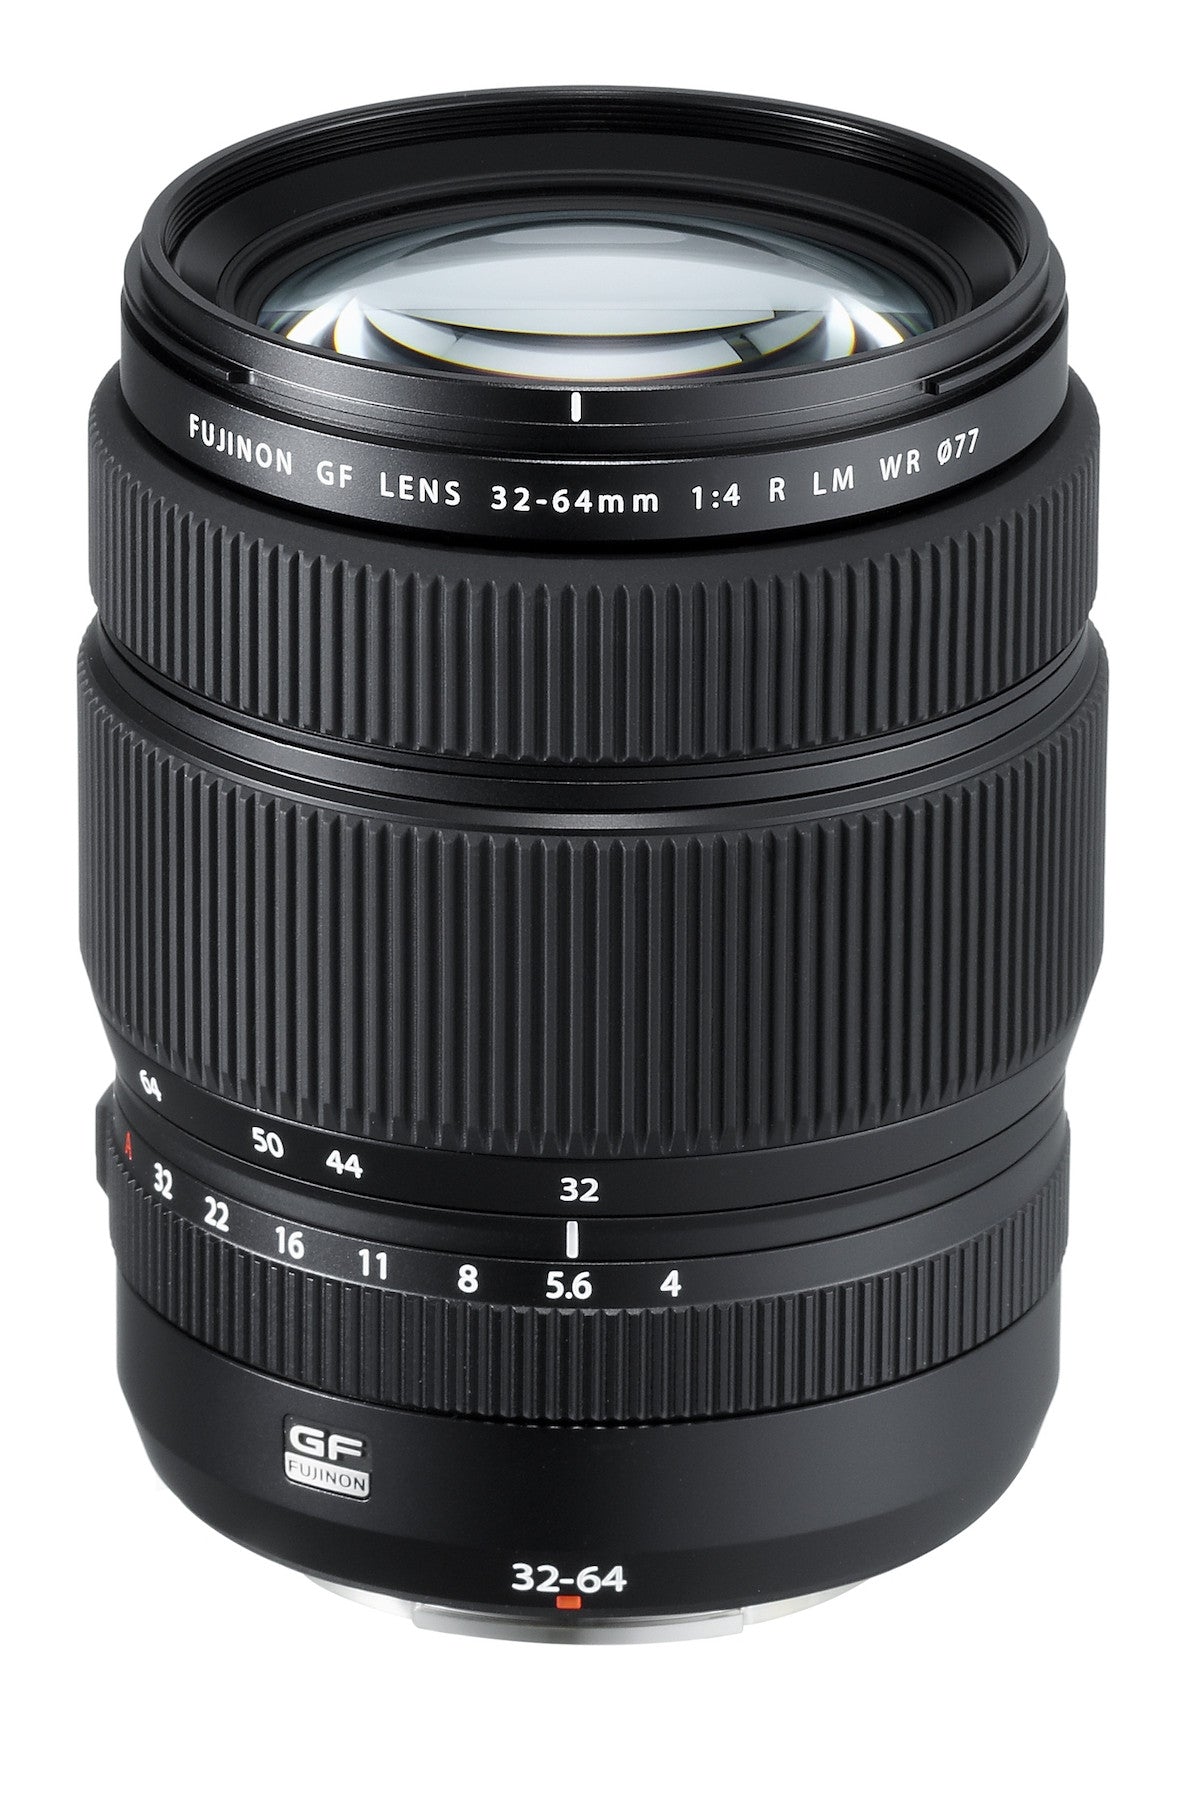 Fujifilm GF 32-64mm f4 R LM WR Lens, lenses medium format, Fujifilm - Pictureline  - 1